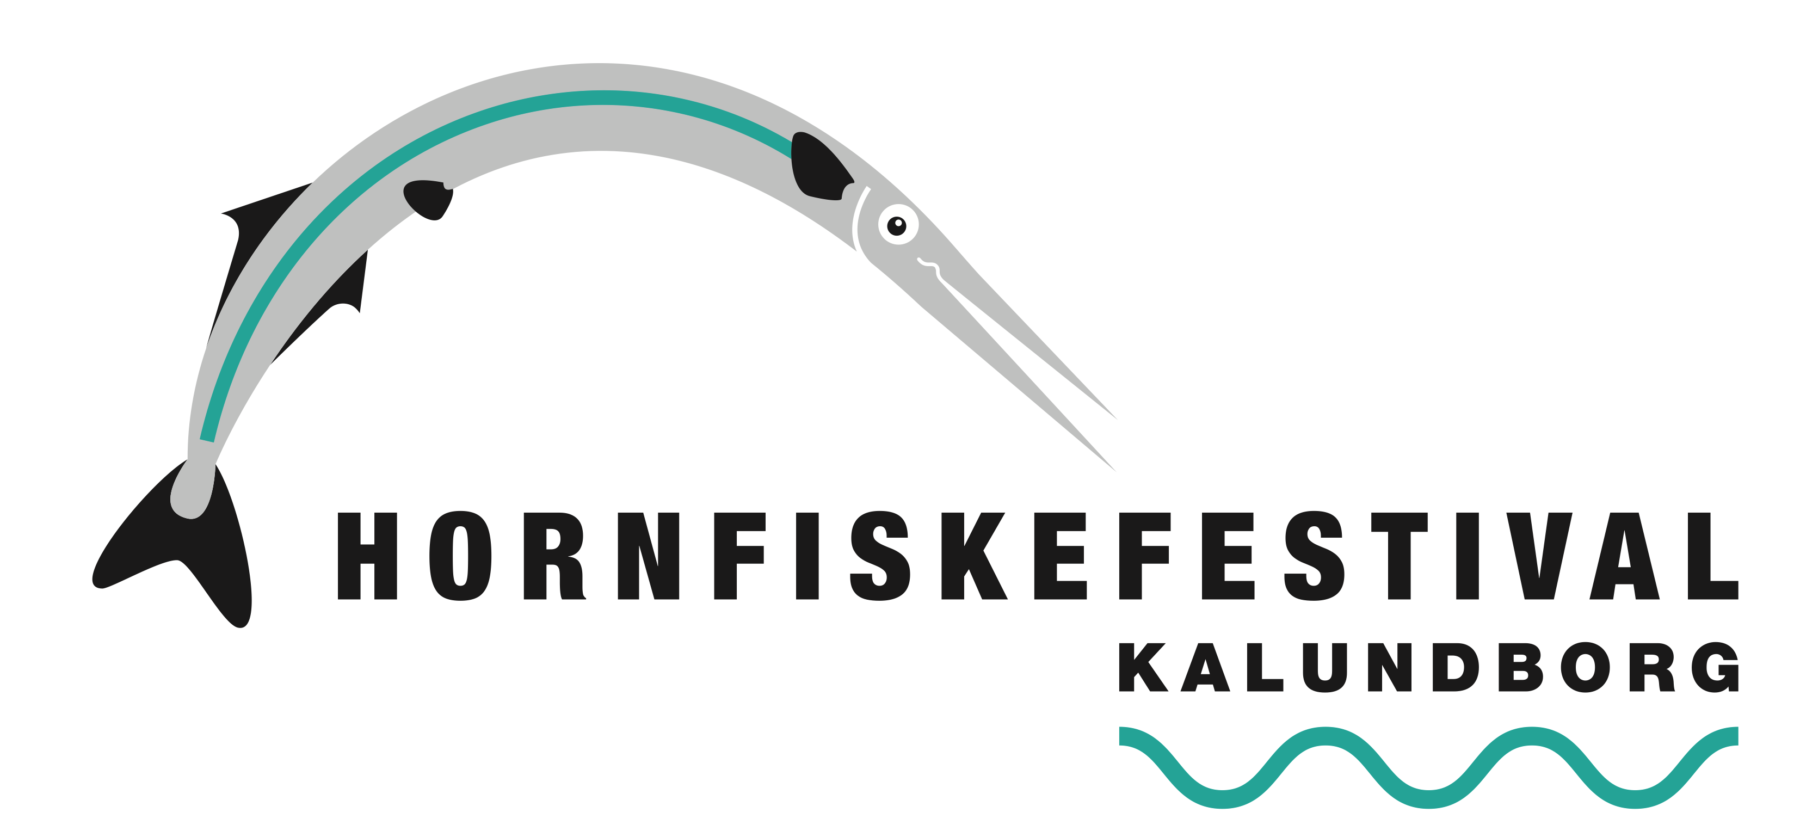 hornfiskefestival